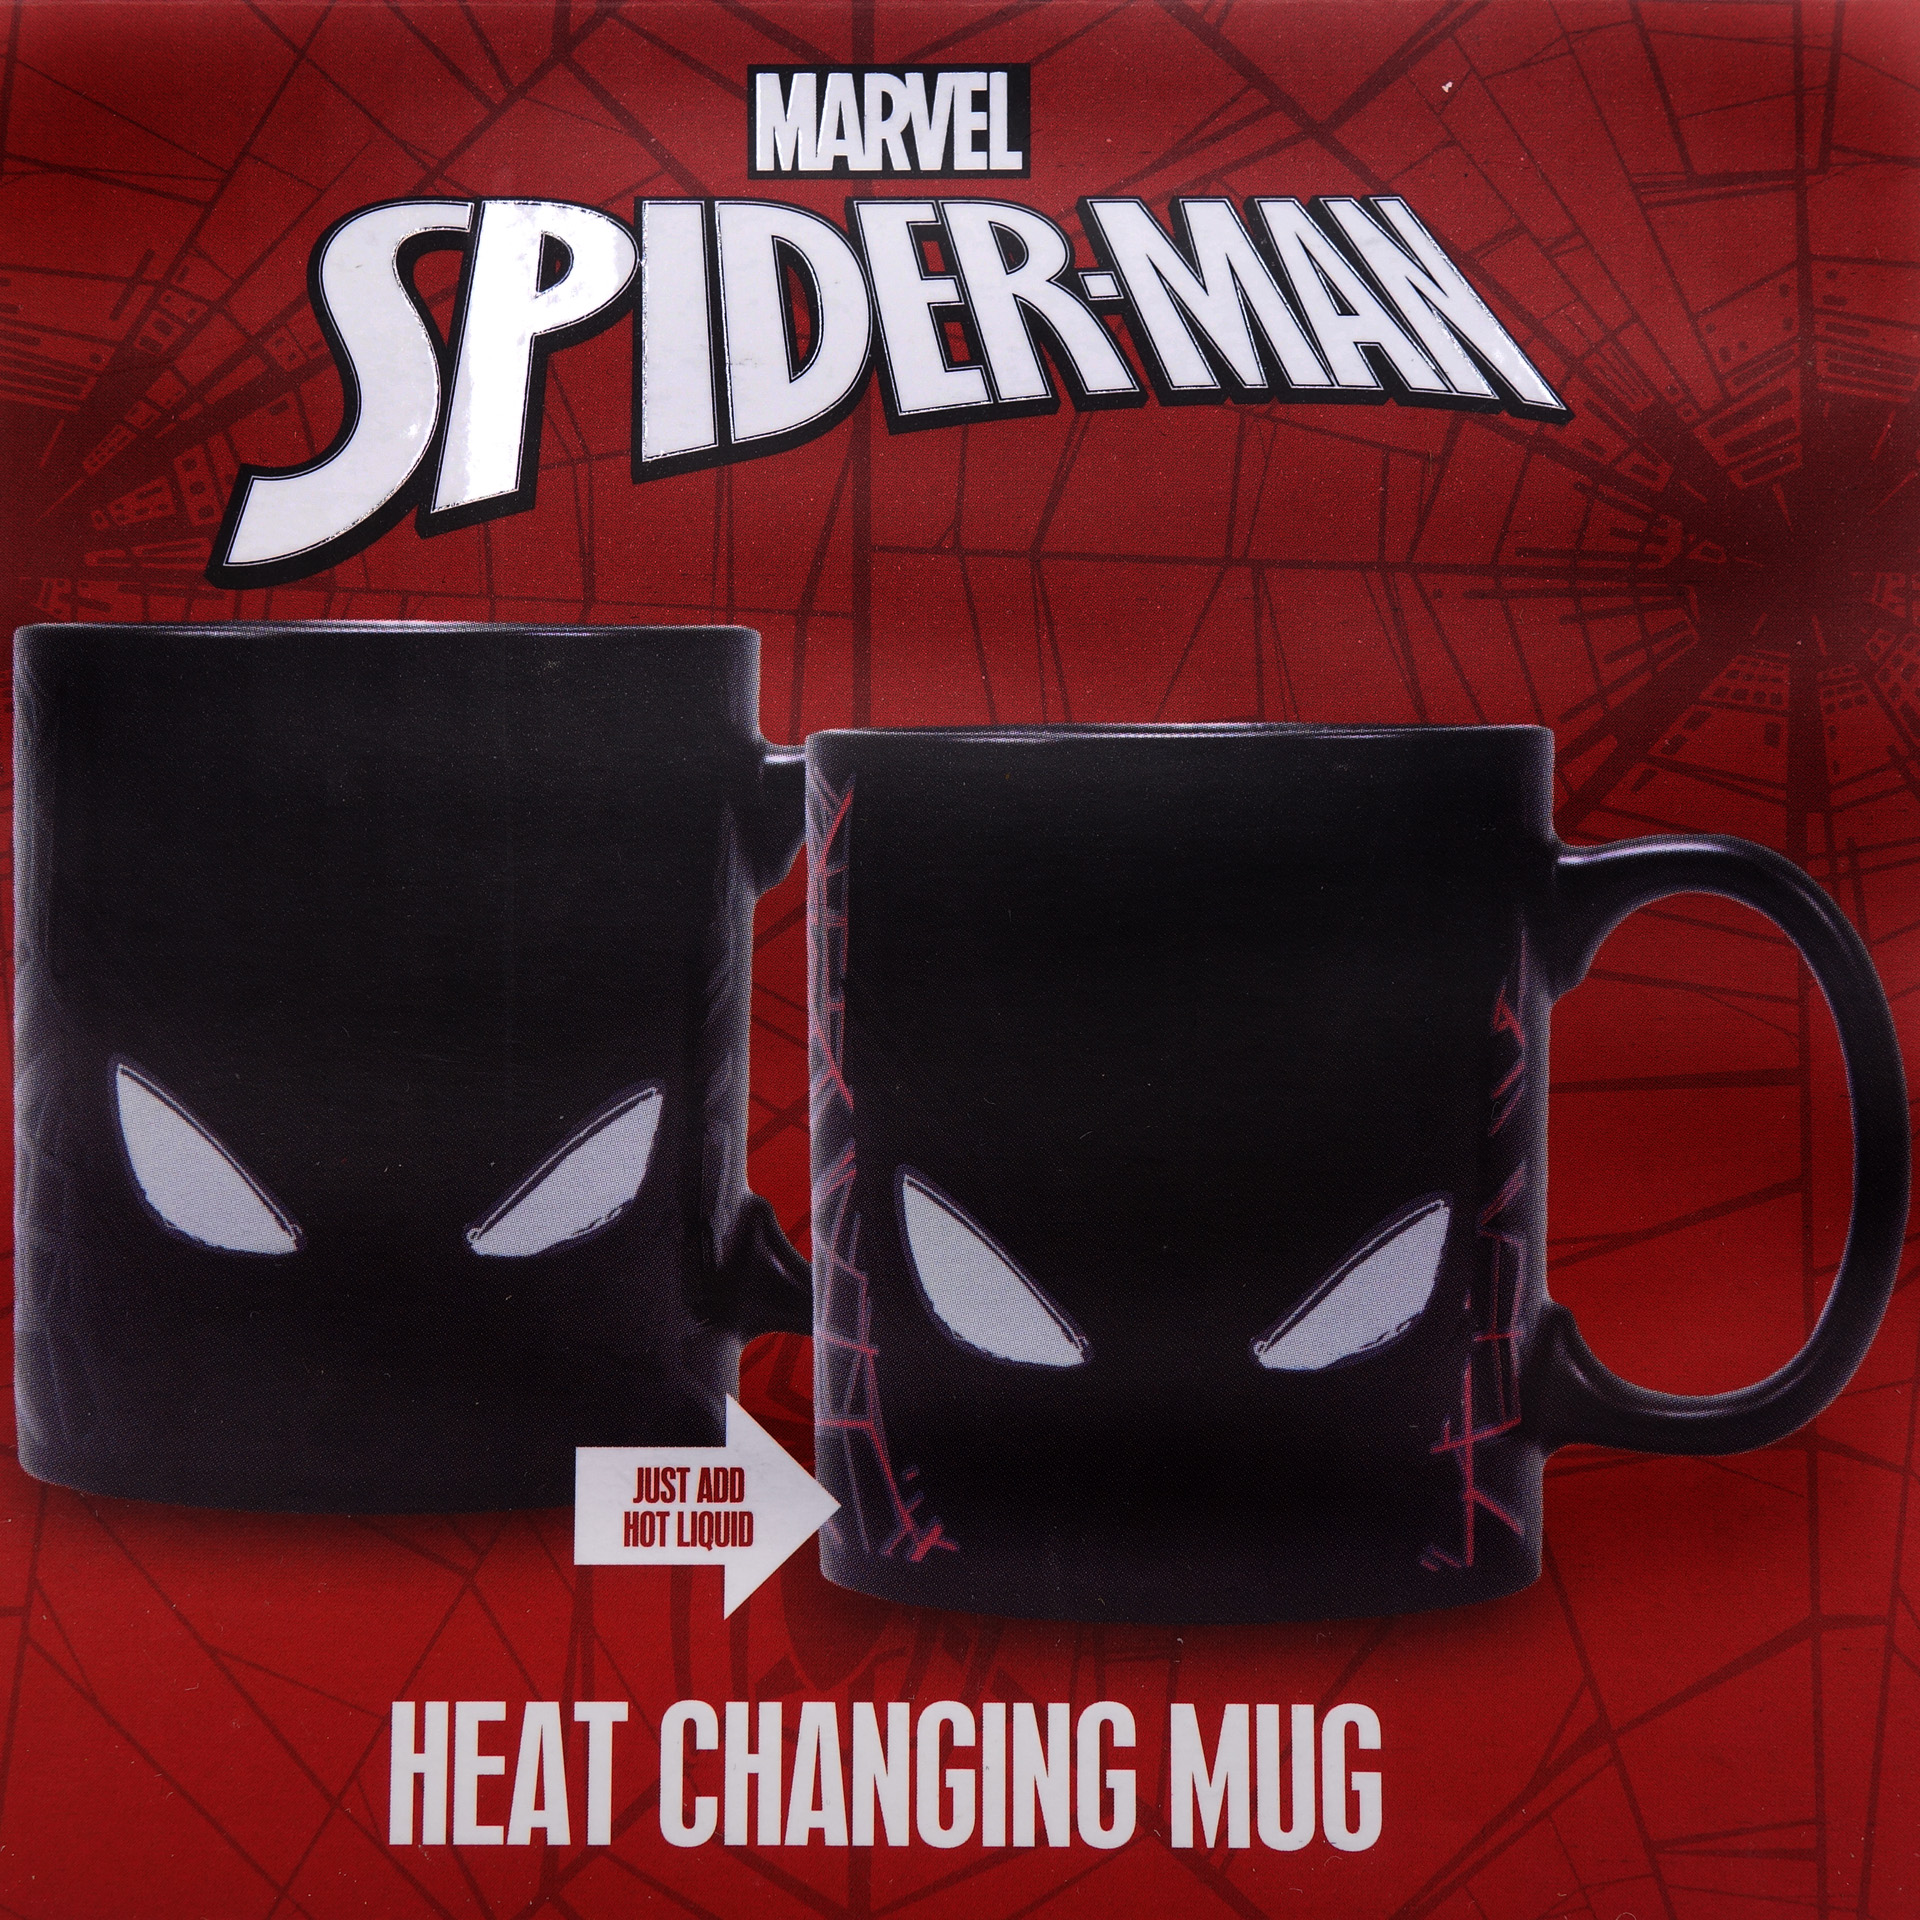 Spiderman Zaubertasse With Great Power Heat Changing Mug